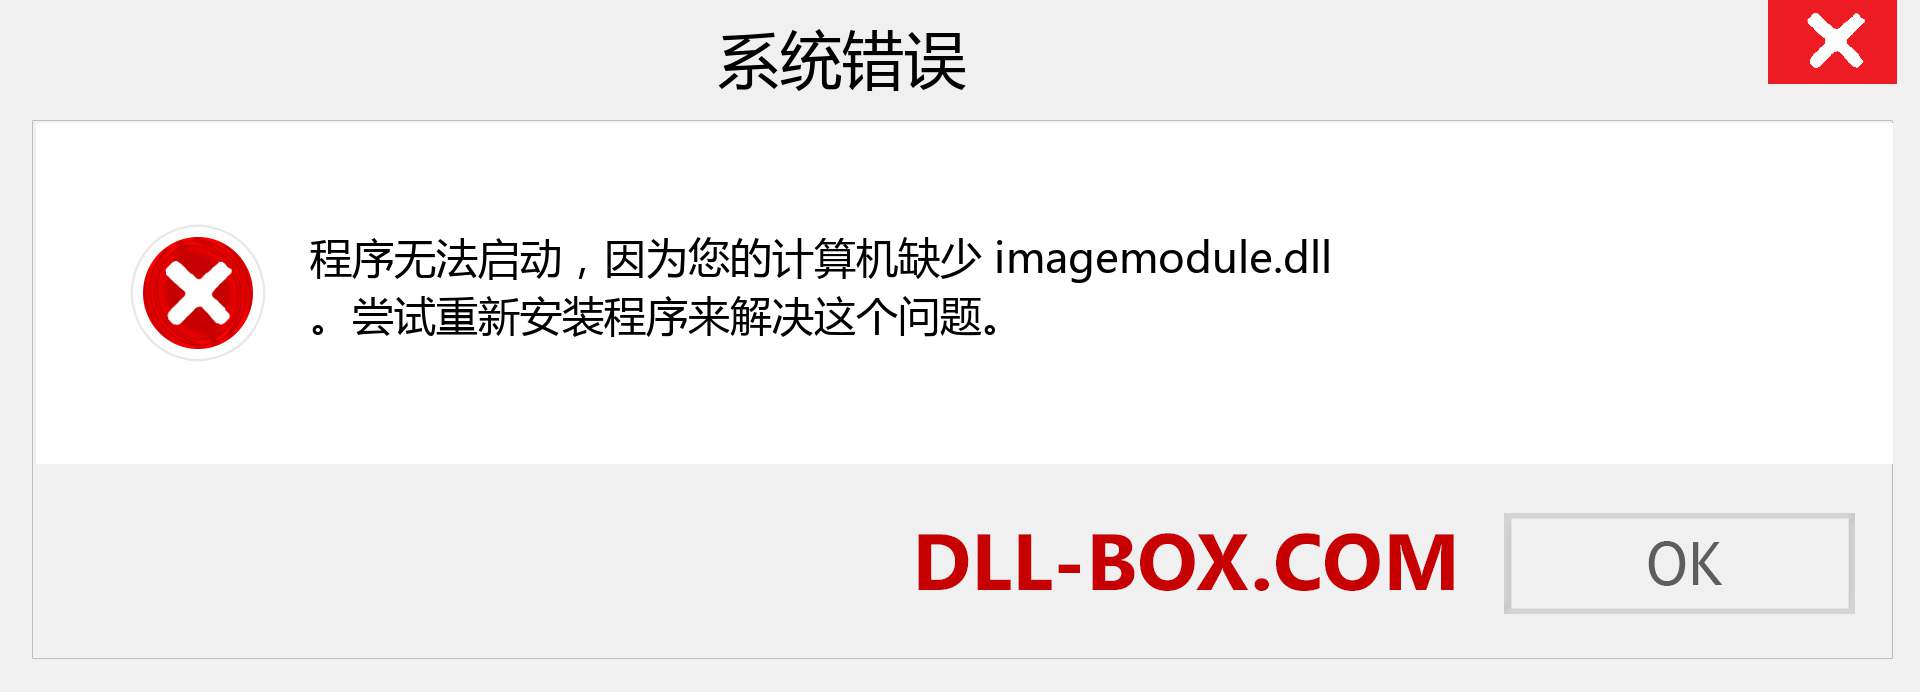 imagemodule.dll 文件丢失？。 适用于 Windows 7、8、10 的下载 - 修复 Windows、照片、图像上的 imagemodule dll 丢失错误